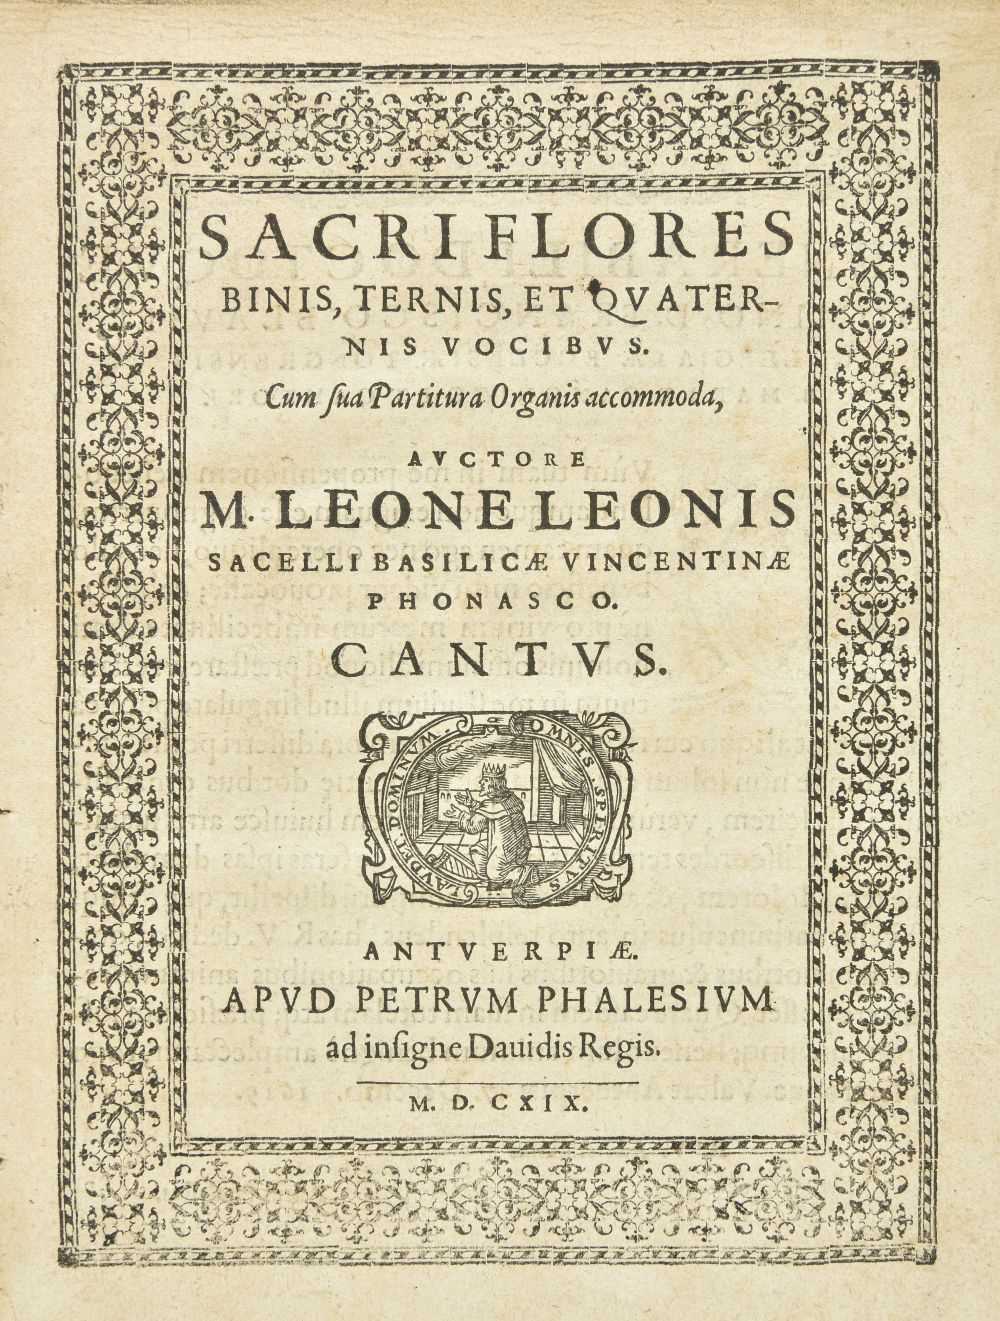 Lot 370 - Music. Sacri Flores Binis, Ternis, et Quaternis Vocibus, Antwerp: Petrum Phalesium, 1619